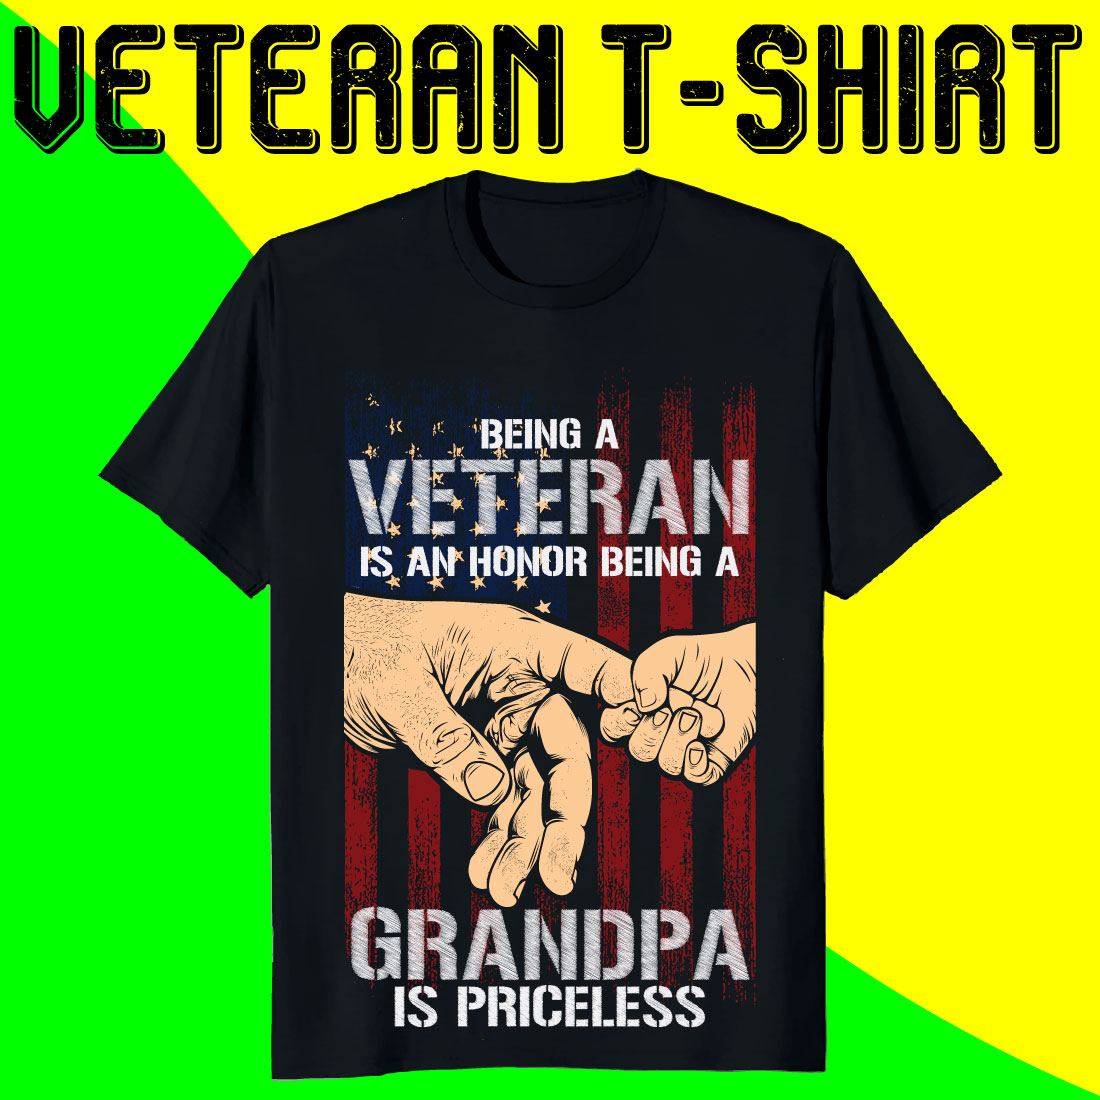 Veteran Grandpa T-shirt Designs Bundle preview image.